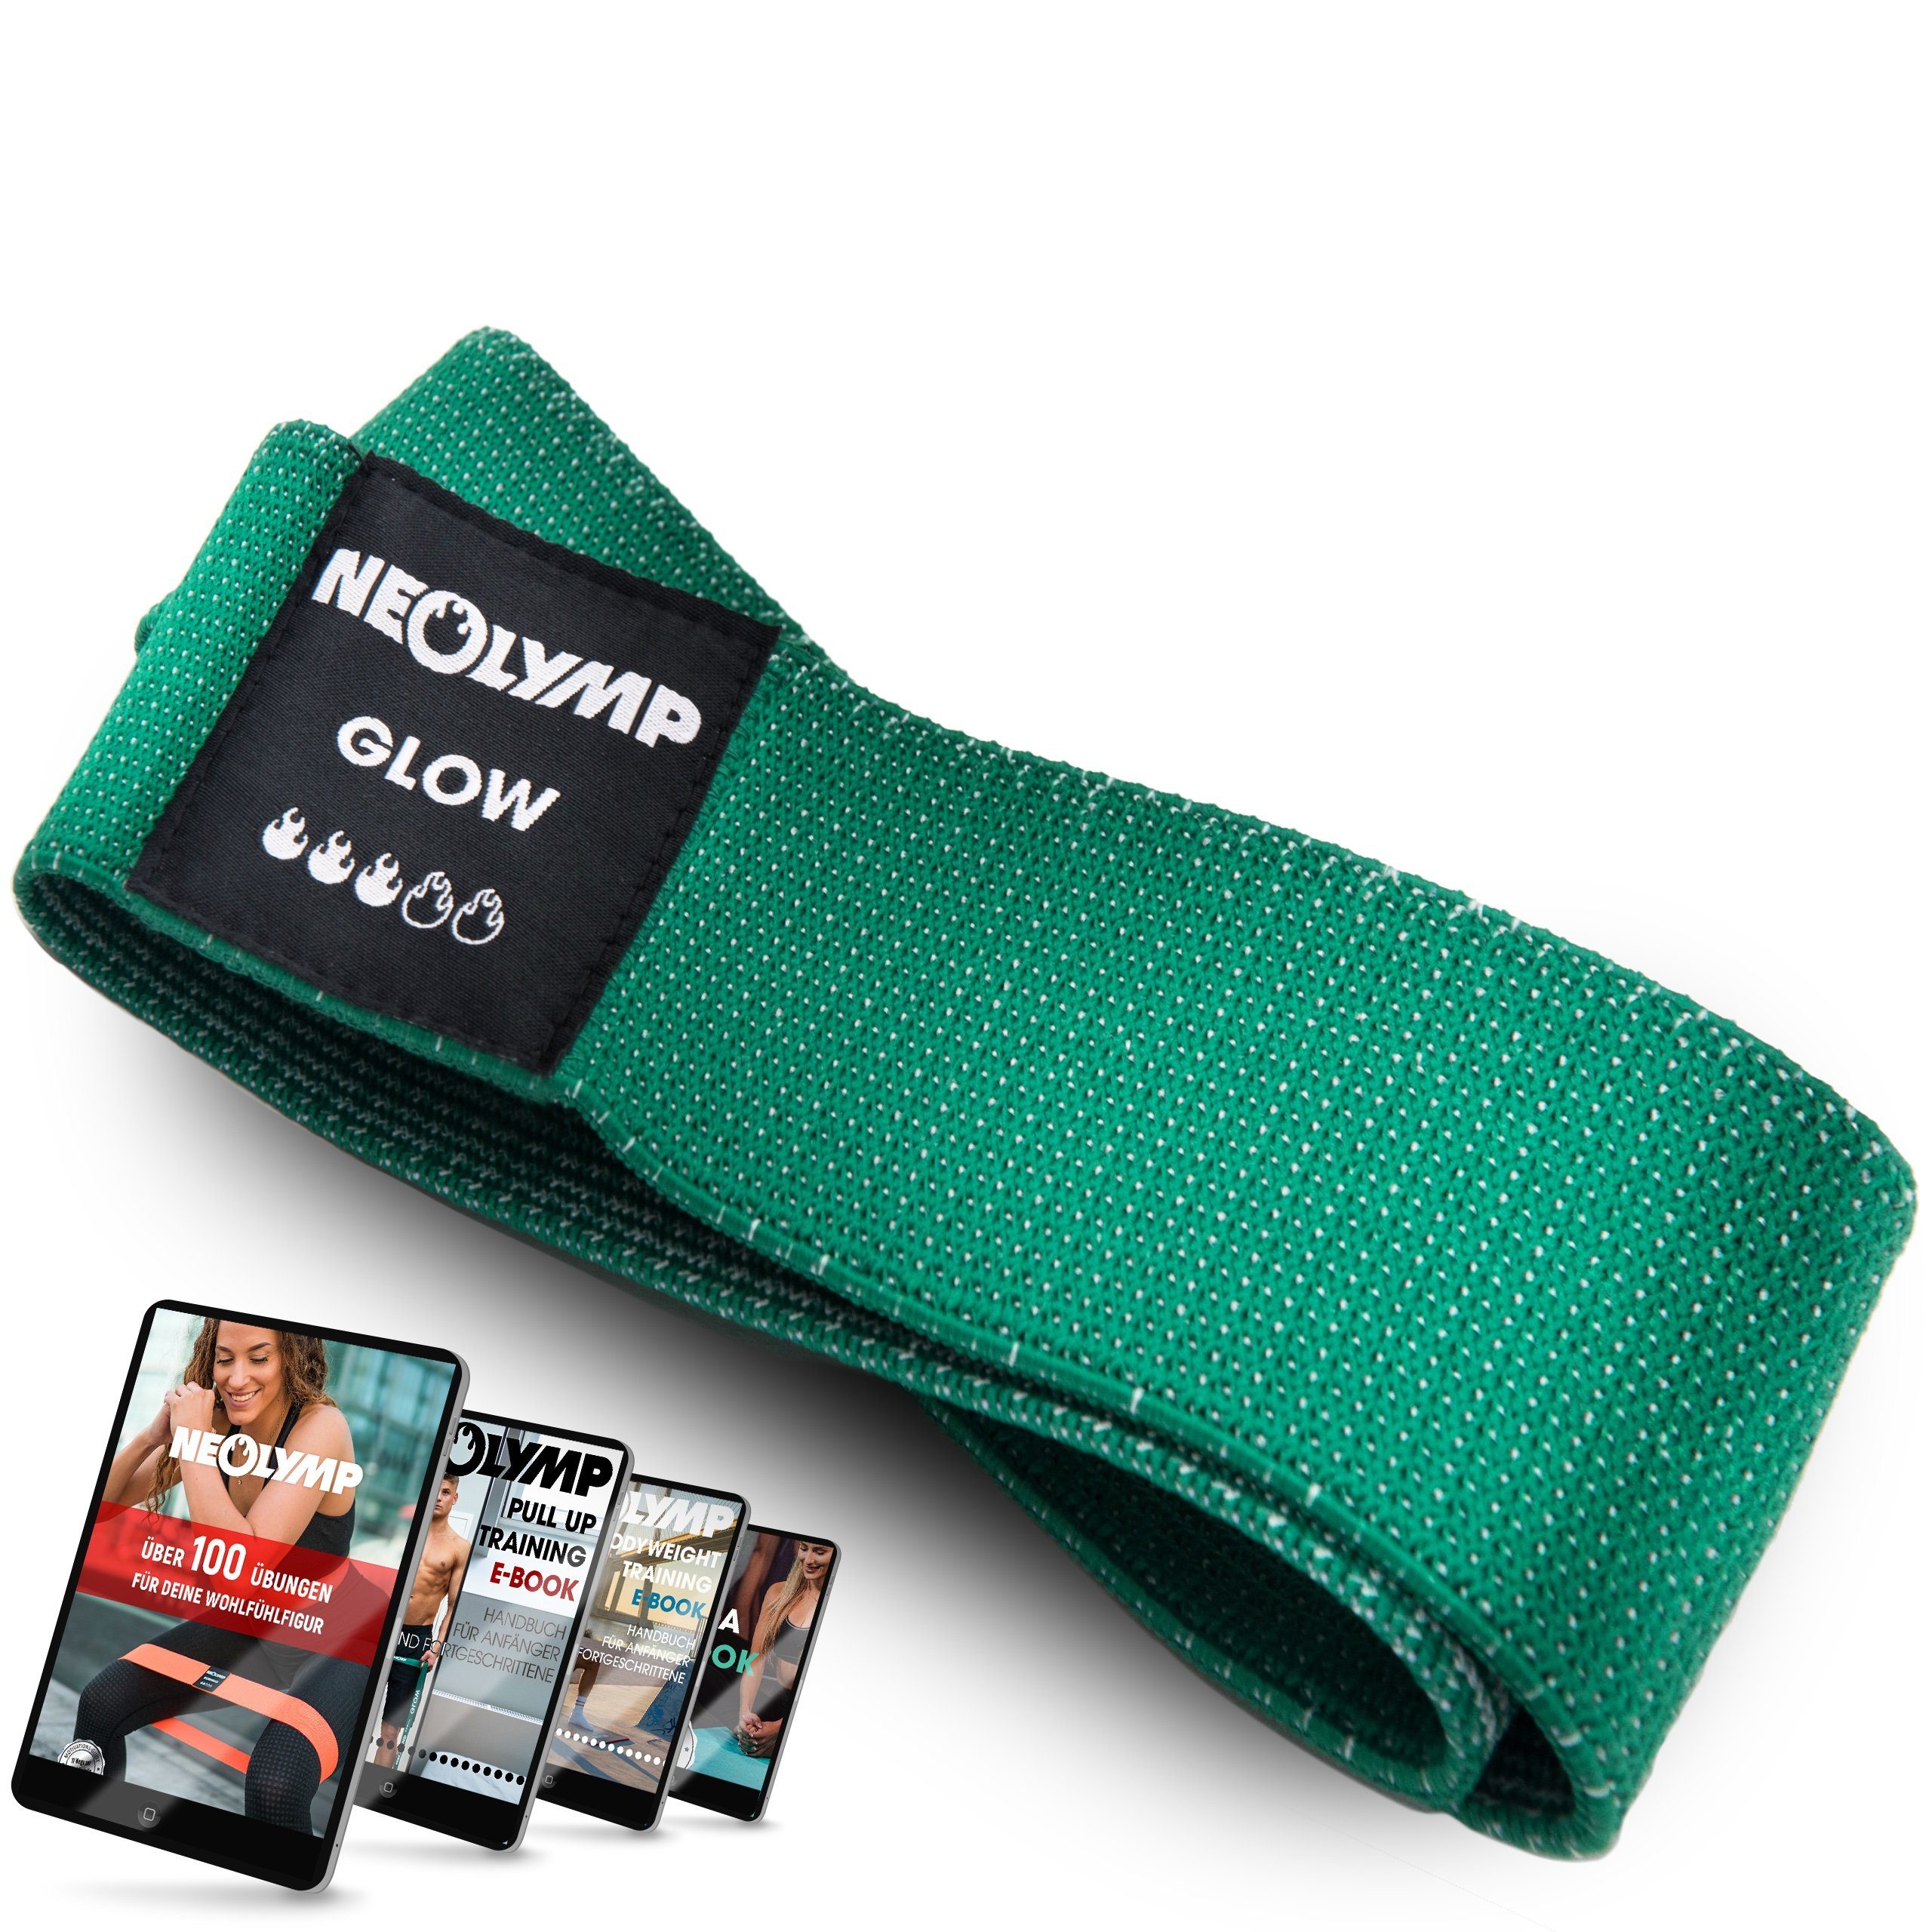 NEOLYMP Trainingsband Premium MinibänderI Fitnessbänder Bauch Beine PoI Trainingsband IMB310, Naturfasern, komfortabel, mit E-Book, langlebig, hygienisch, waschbar Stufe 3 grün | Fitnessbänder